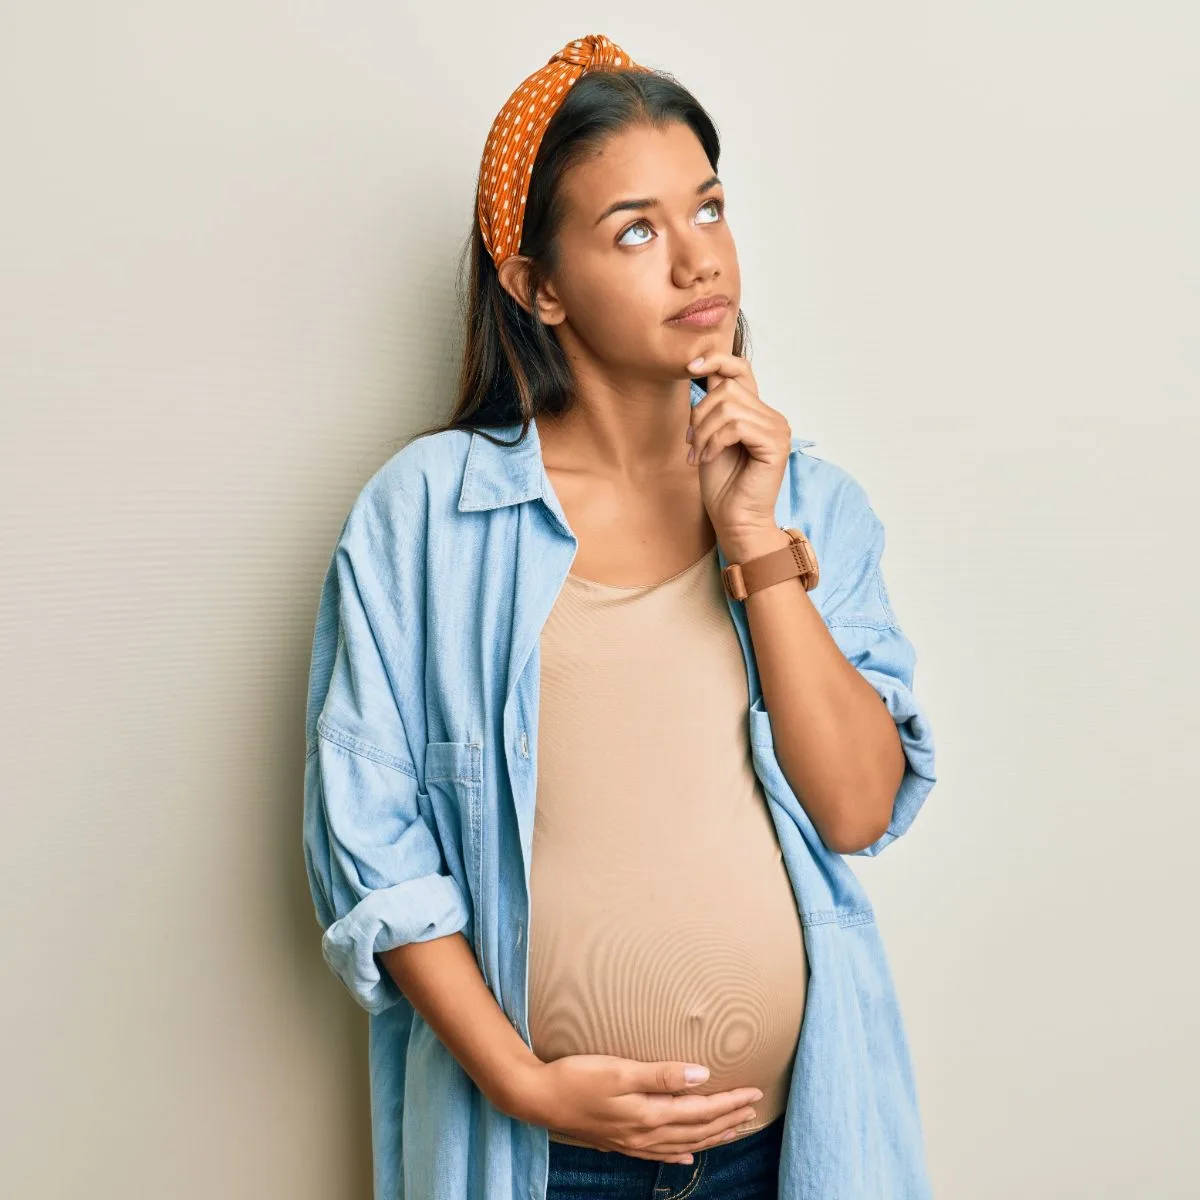 Ce înseamnă dacă visezi că elti însărcinată